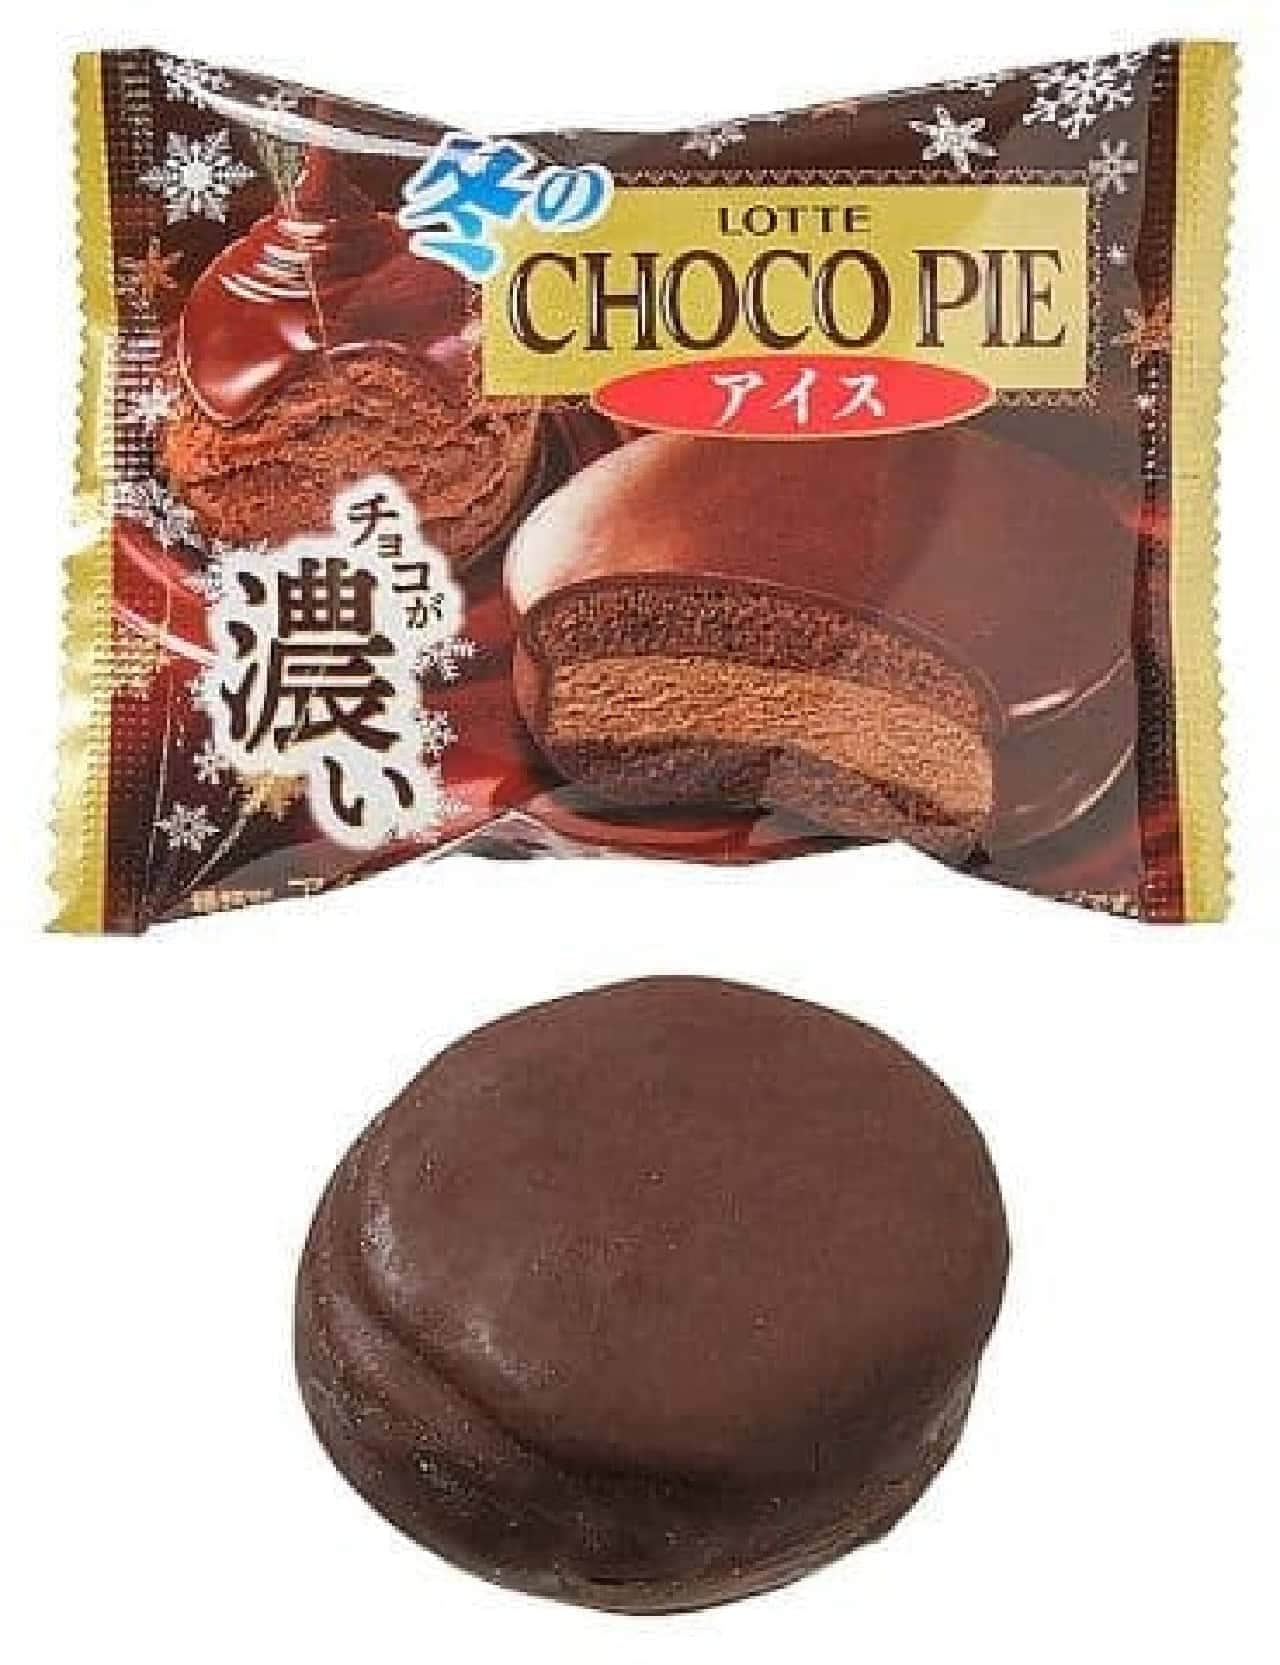 7-ELEVEN "Lotte Winter Choco Pie Ice Cream